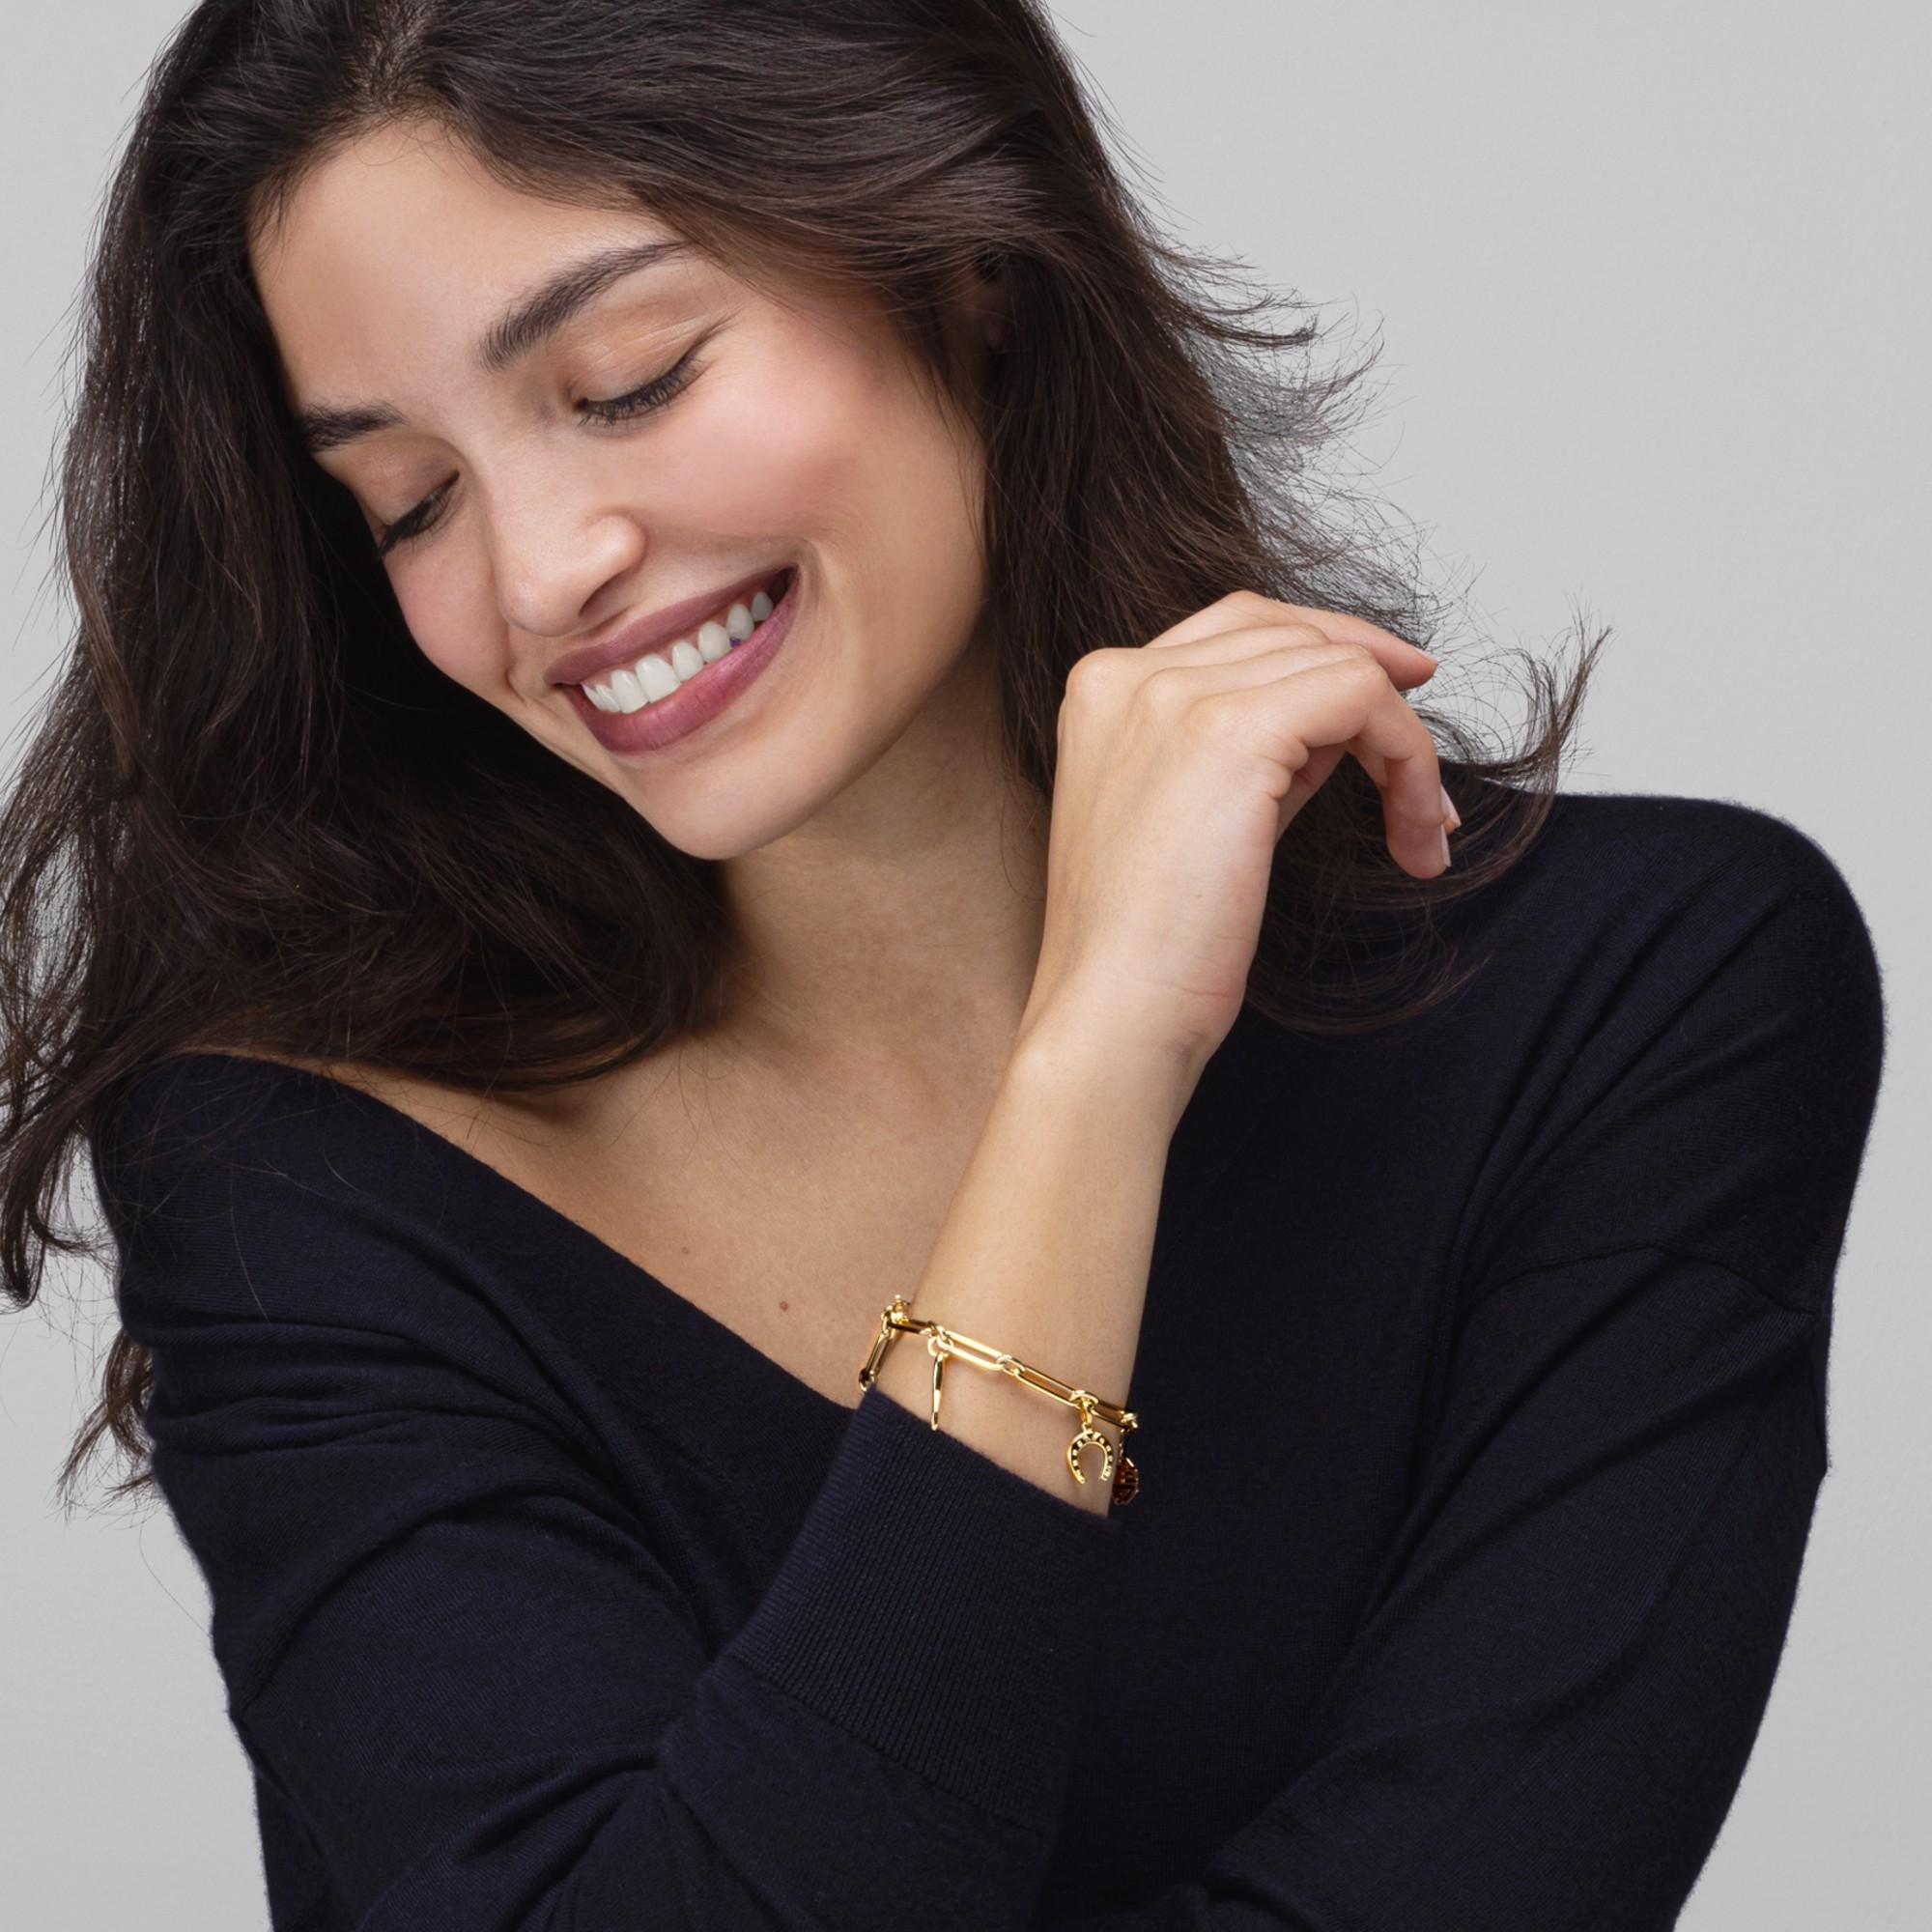 Alex Jona Design-Kollektion, handgefertigt in Italien, Glücksbringer-Armband aus 18 Karat Gelbgold.

Die Juwelen von Alex Jona zeichnen sich nicht nur durch ihr besonderes Design und die hervorragende Qualität der Edelsteine aus, sondern auch durch